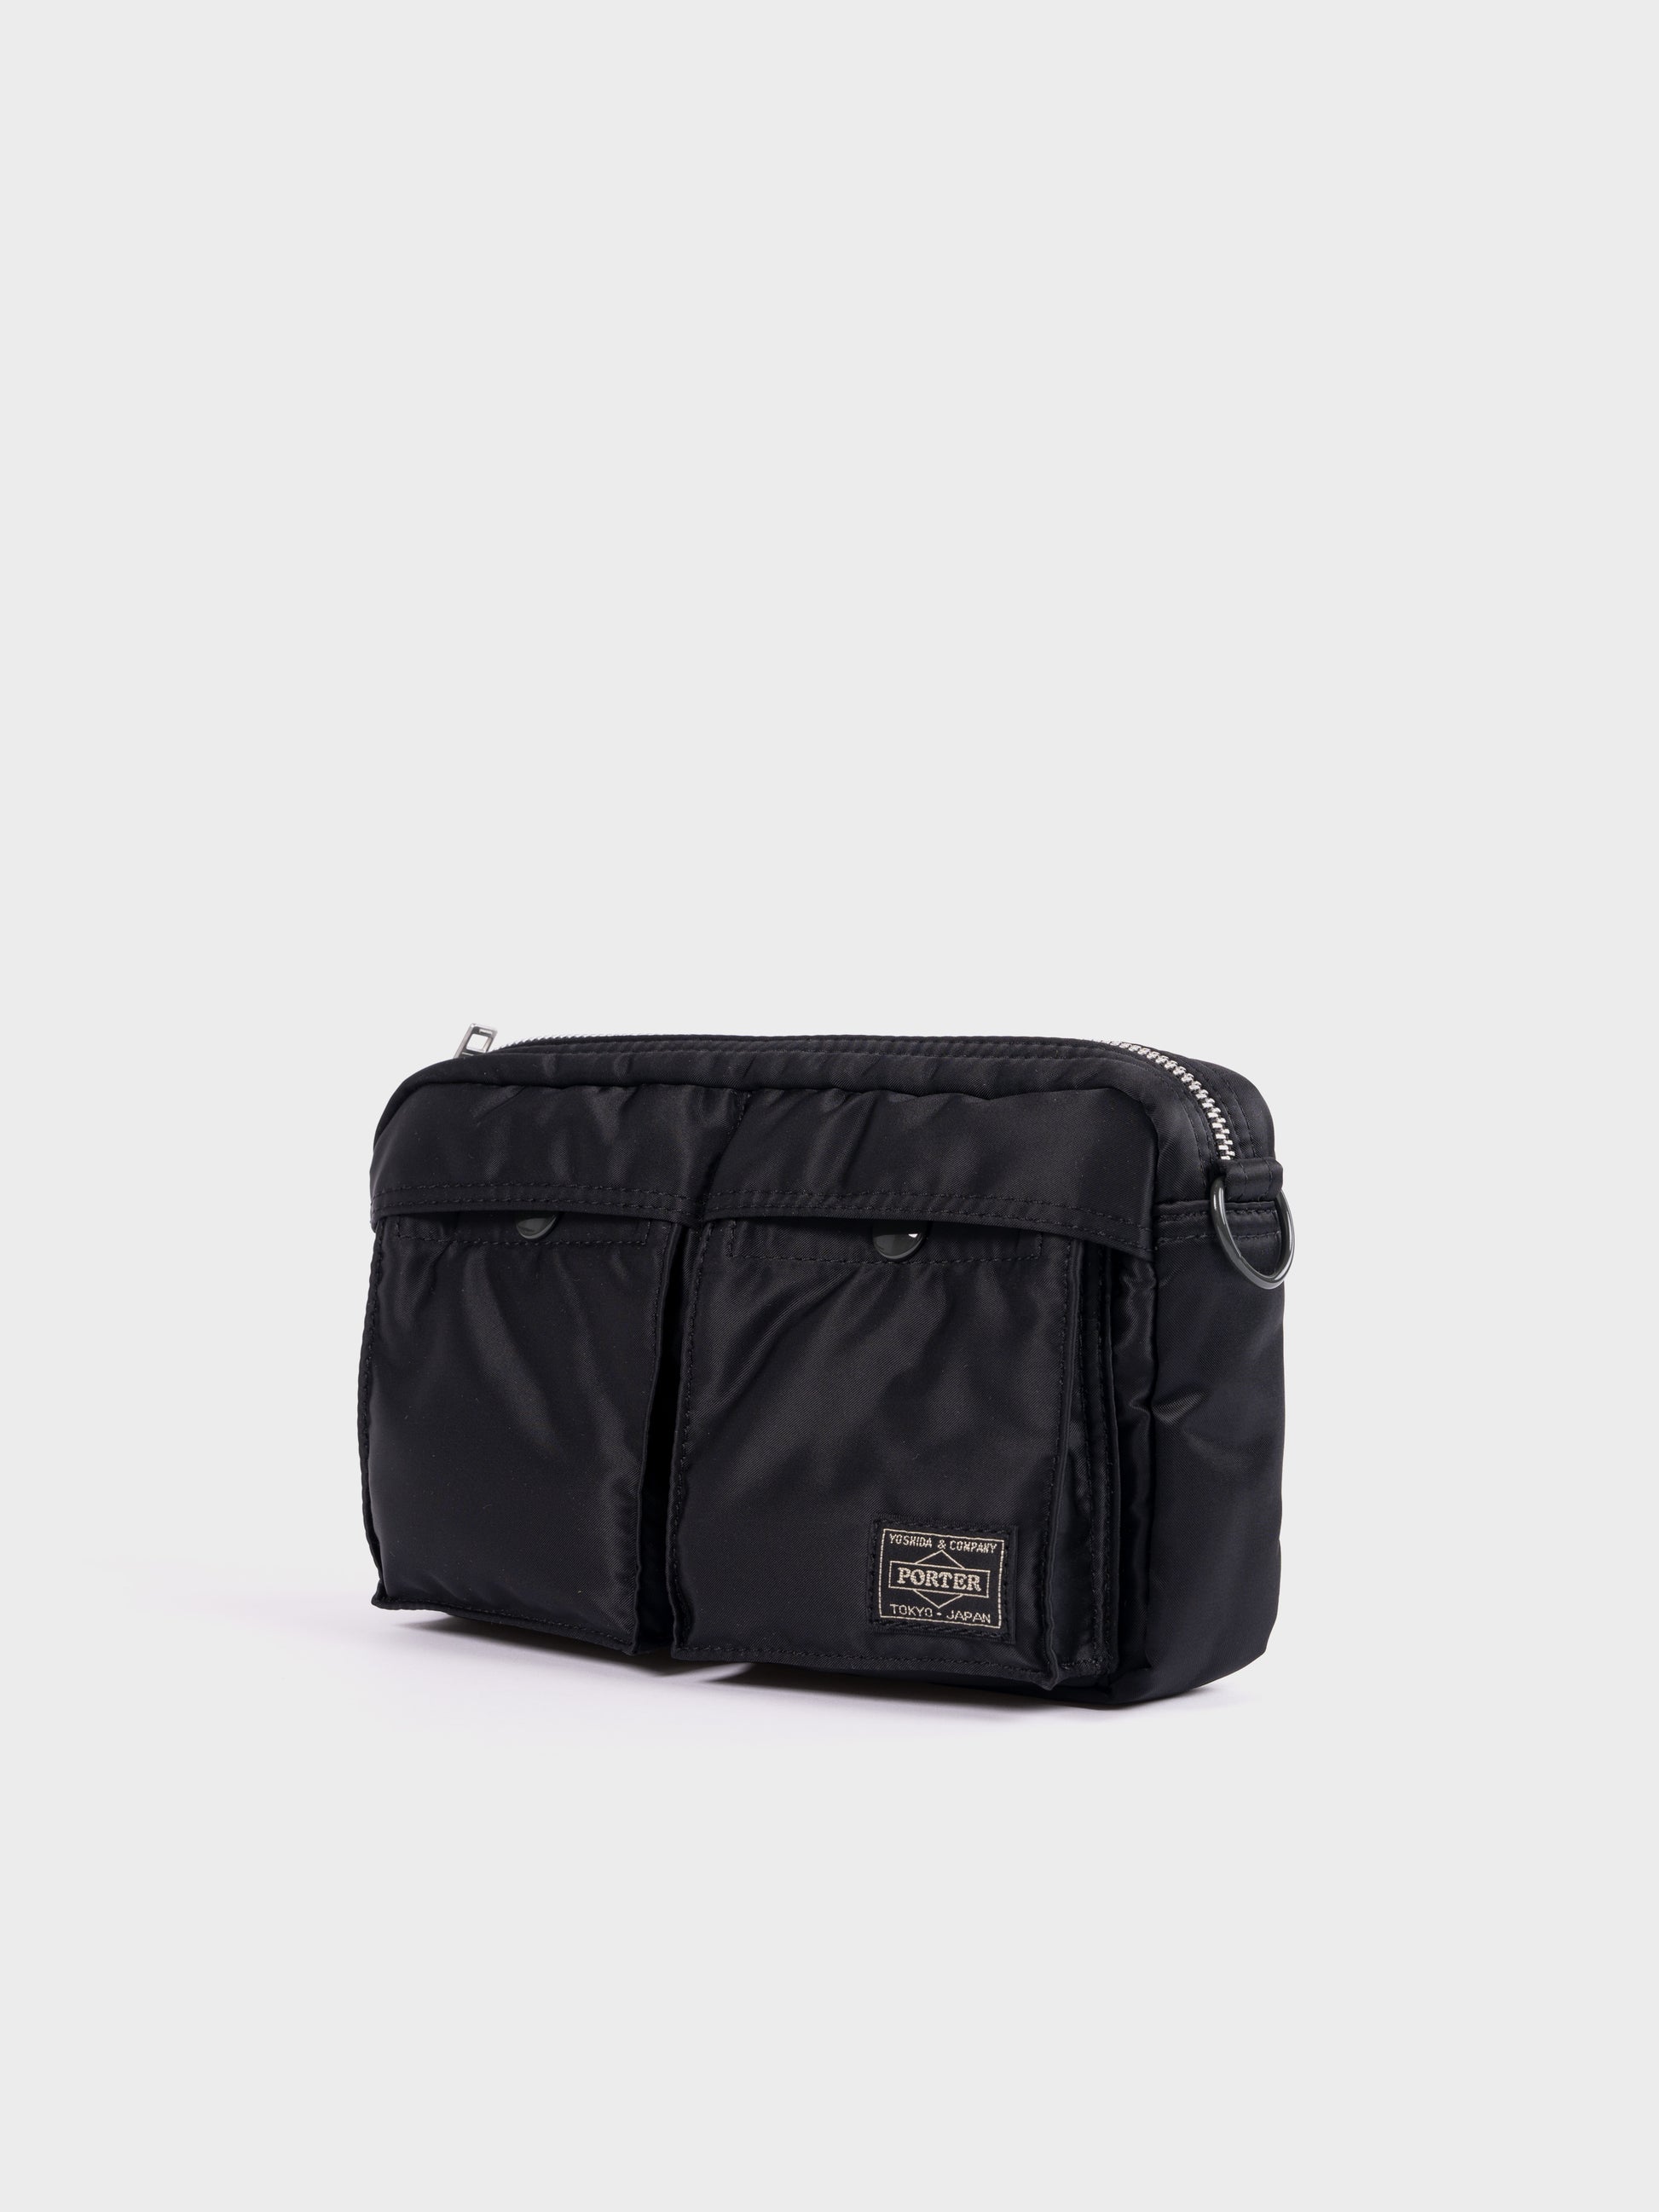 Porter-Yoshida & Co Tanker Shoulder Bag - Black